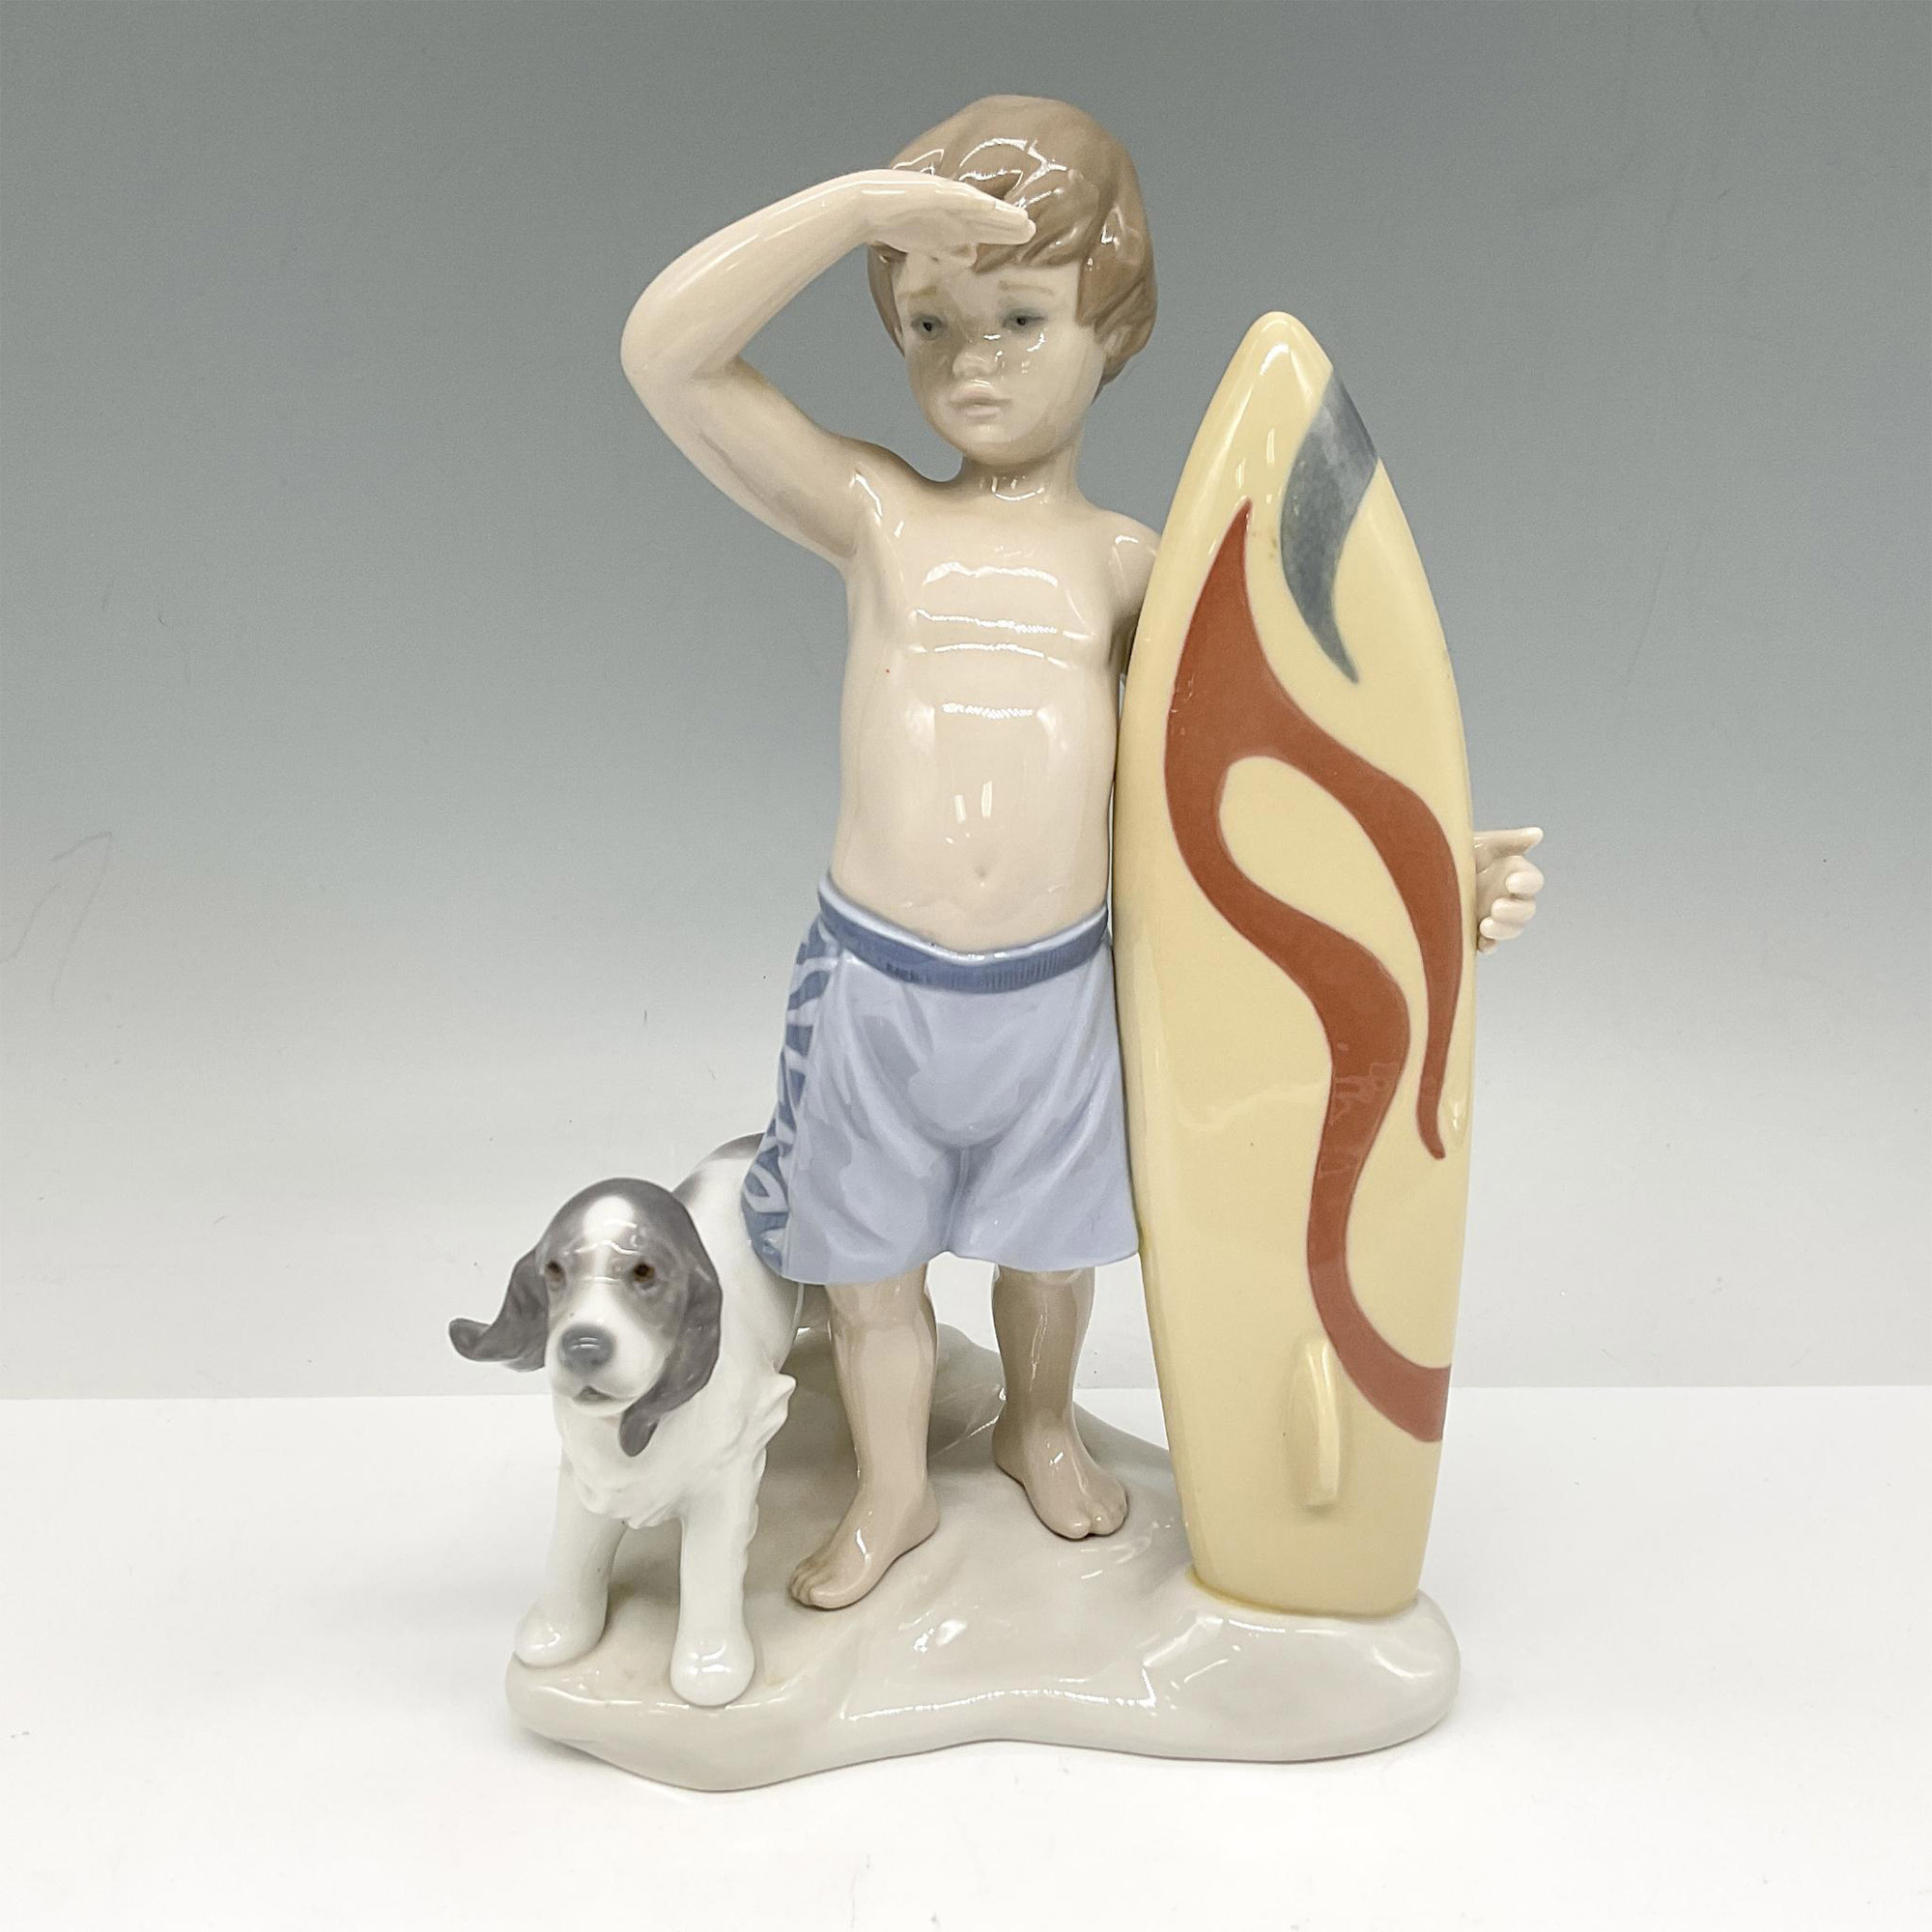 Surfs Up 01008110 - Lladro Porcelain Figurine